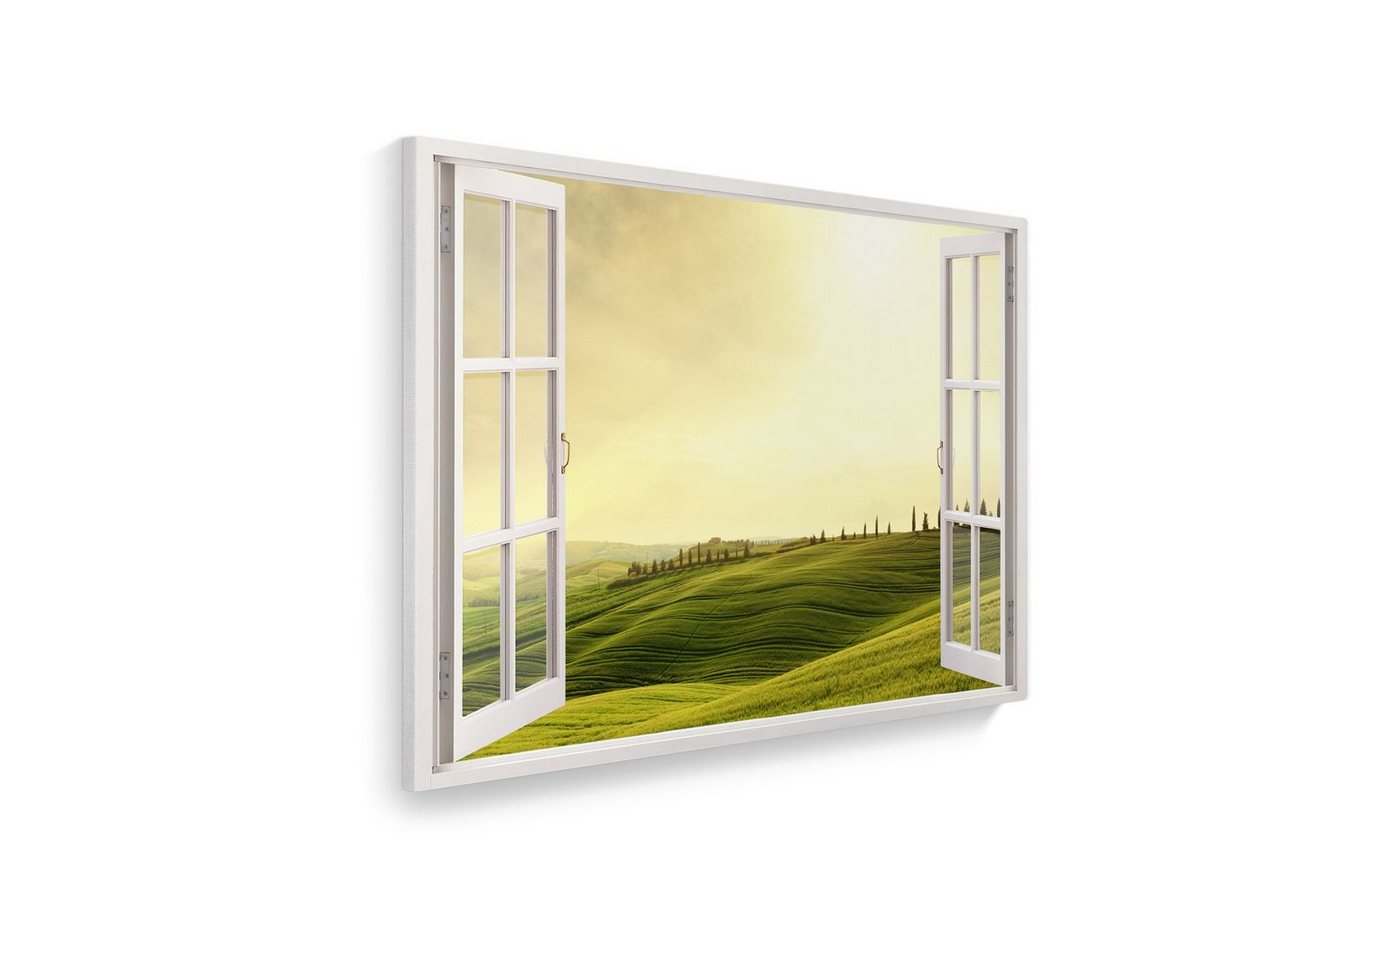 WallSpirit Leinwandbild Fenster mit Aussicht", Toscana, Leinwandbild geeignet für alle Wohnbereiche" von WallSpirit